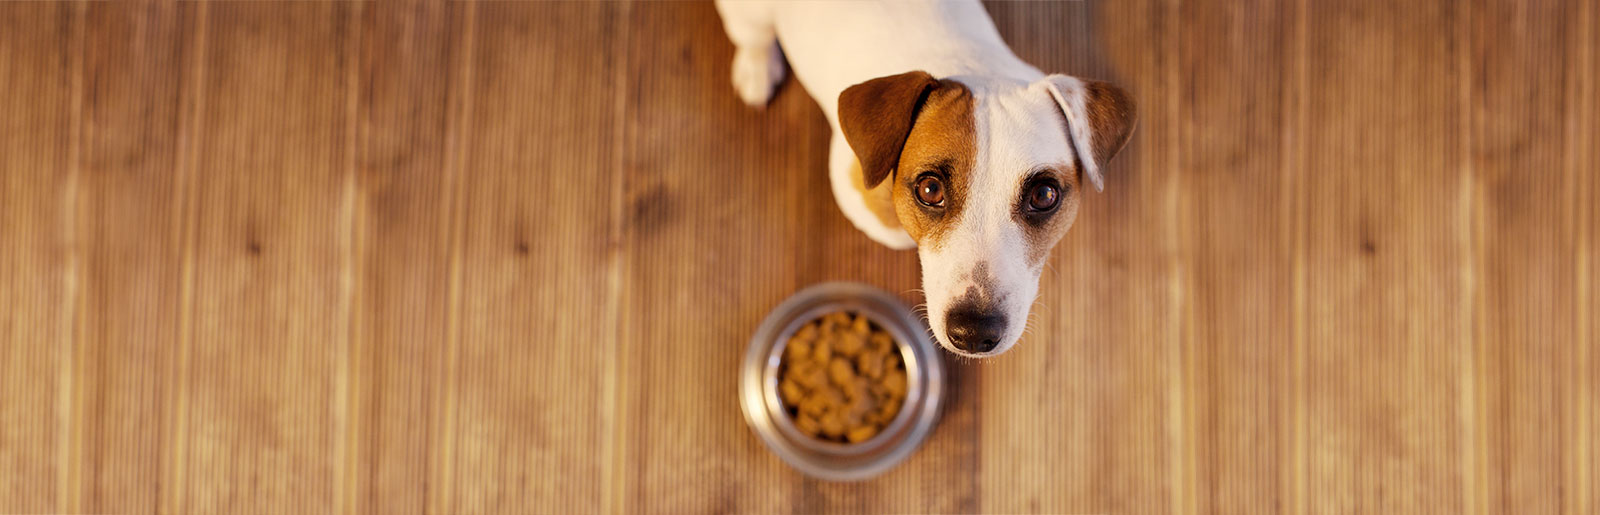 Hundefutter-Deklarationen und Inhaltsstoffe